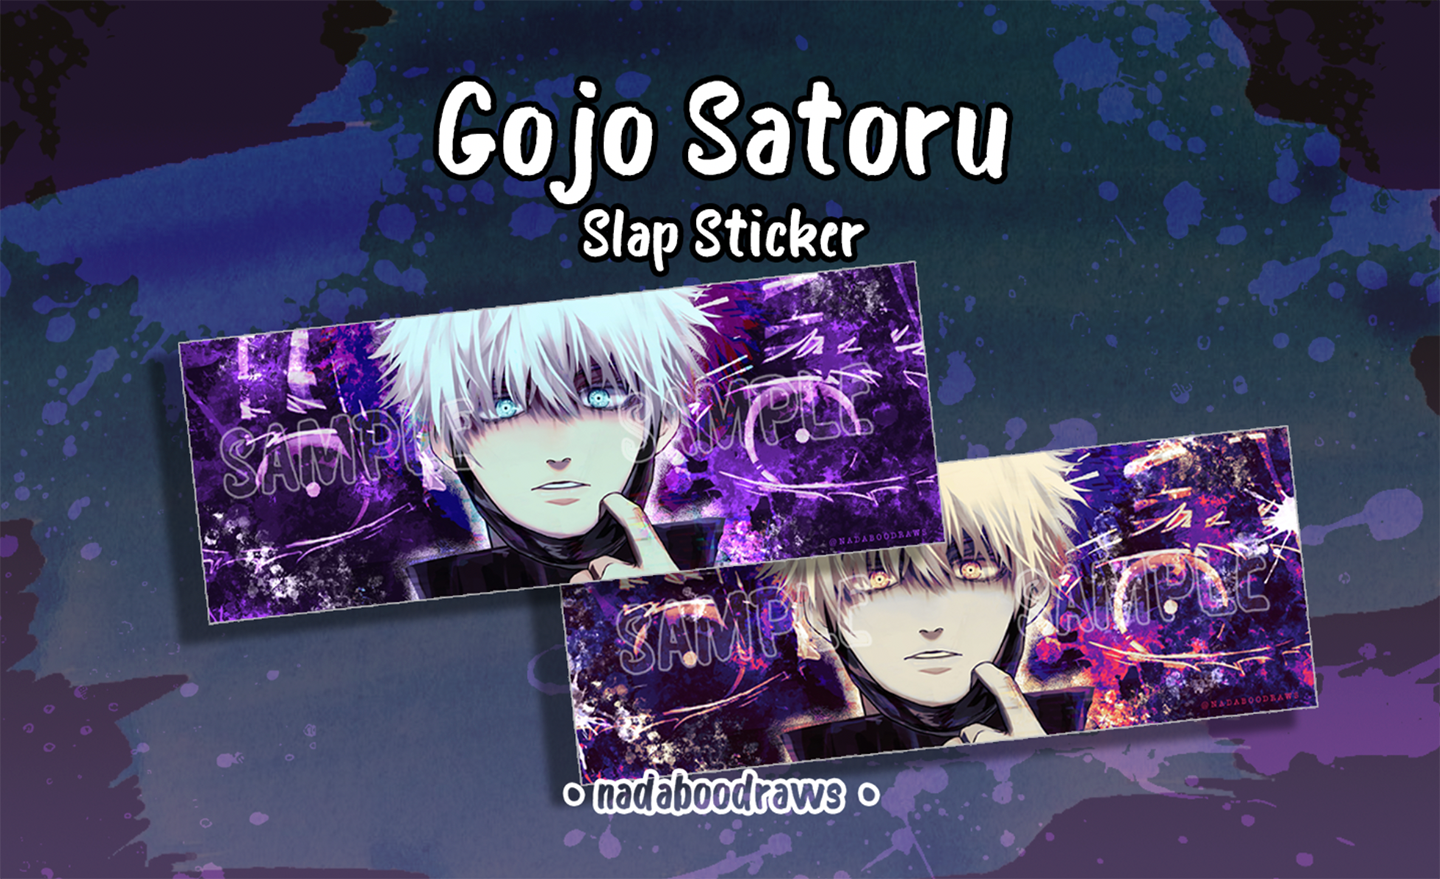 Gojo Satoru Slap Stickers